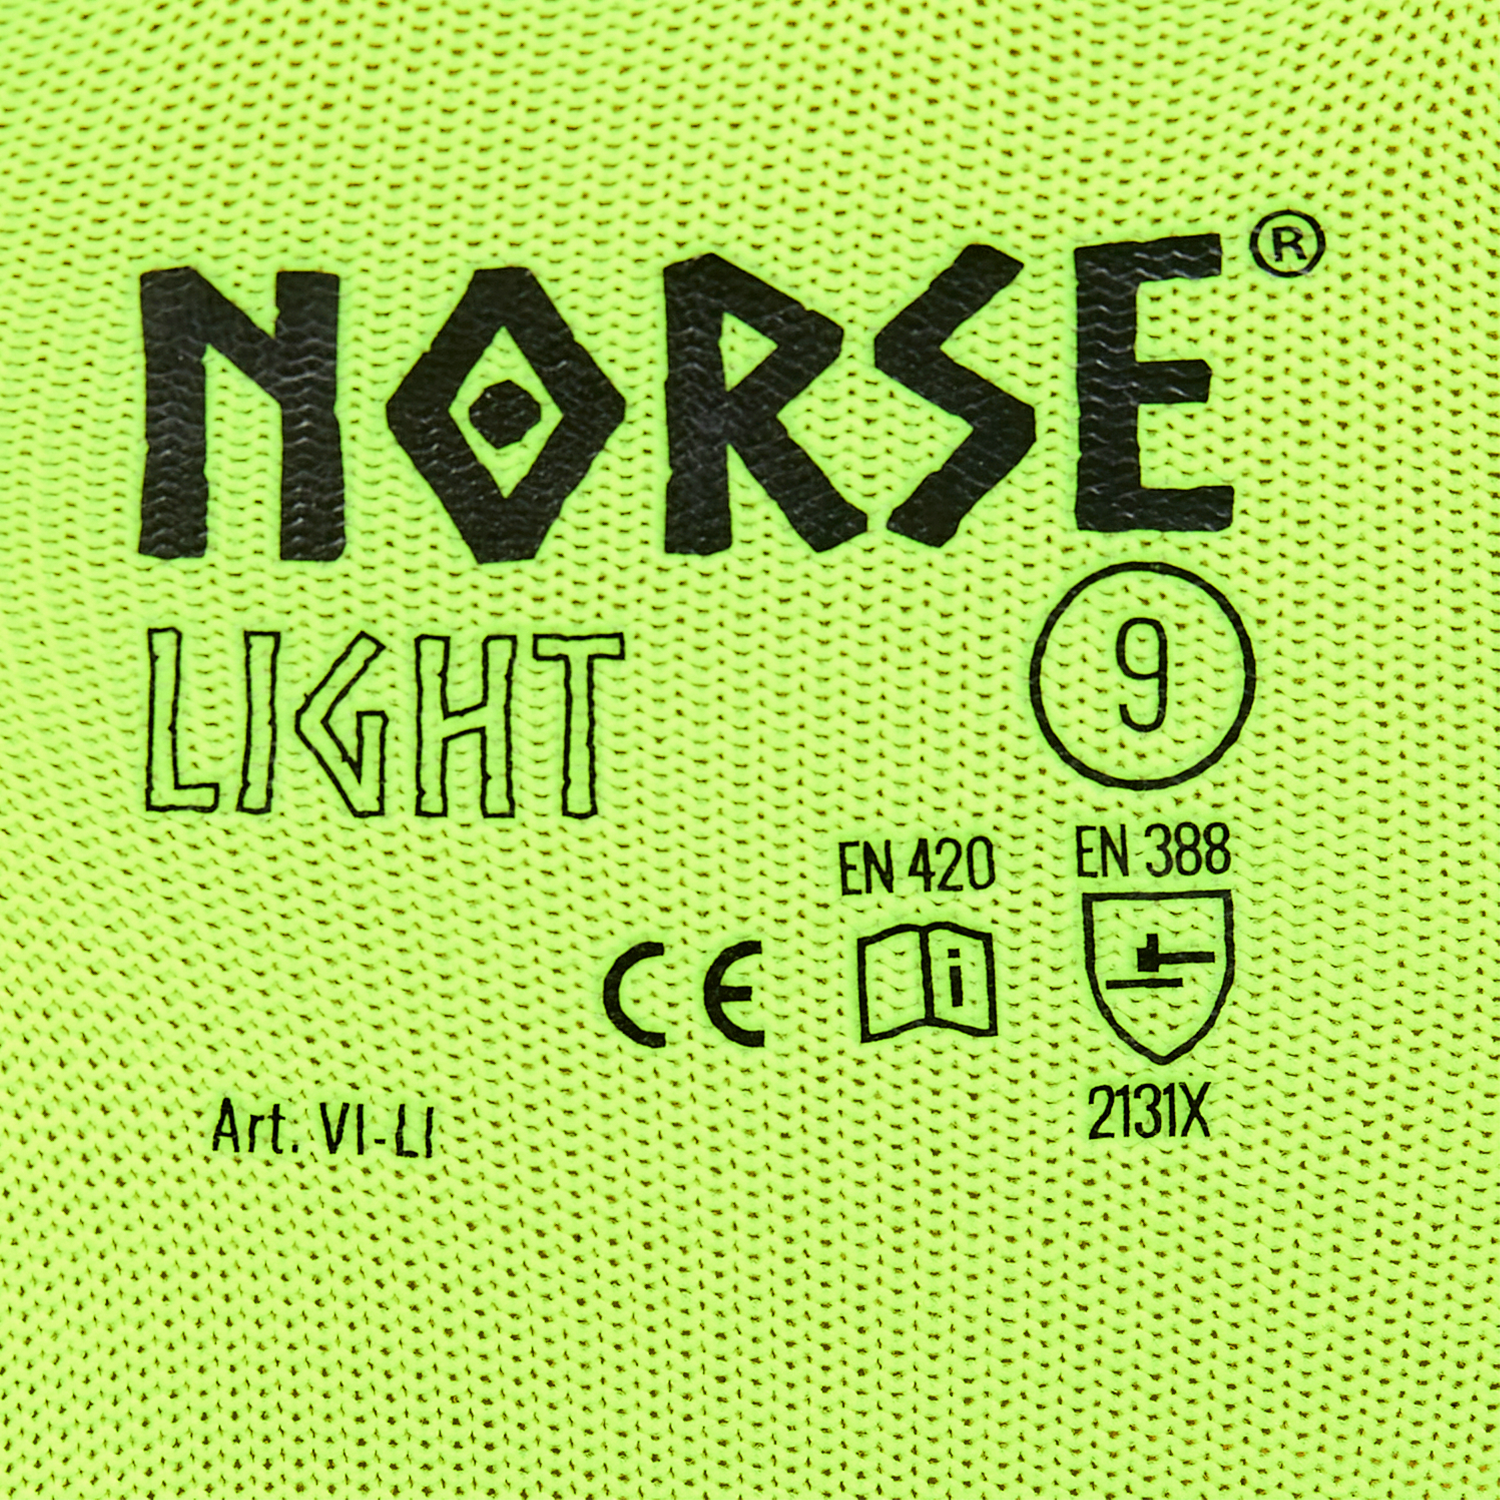 NORSE Light assembly käsineet koko 11